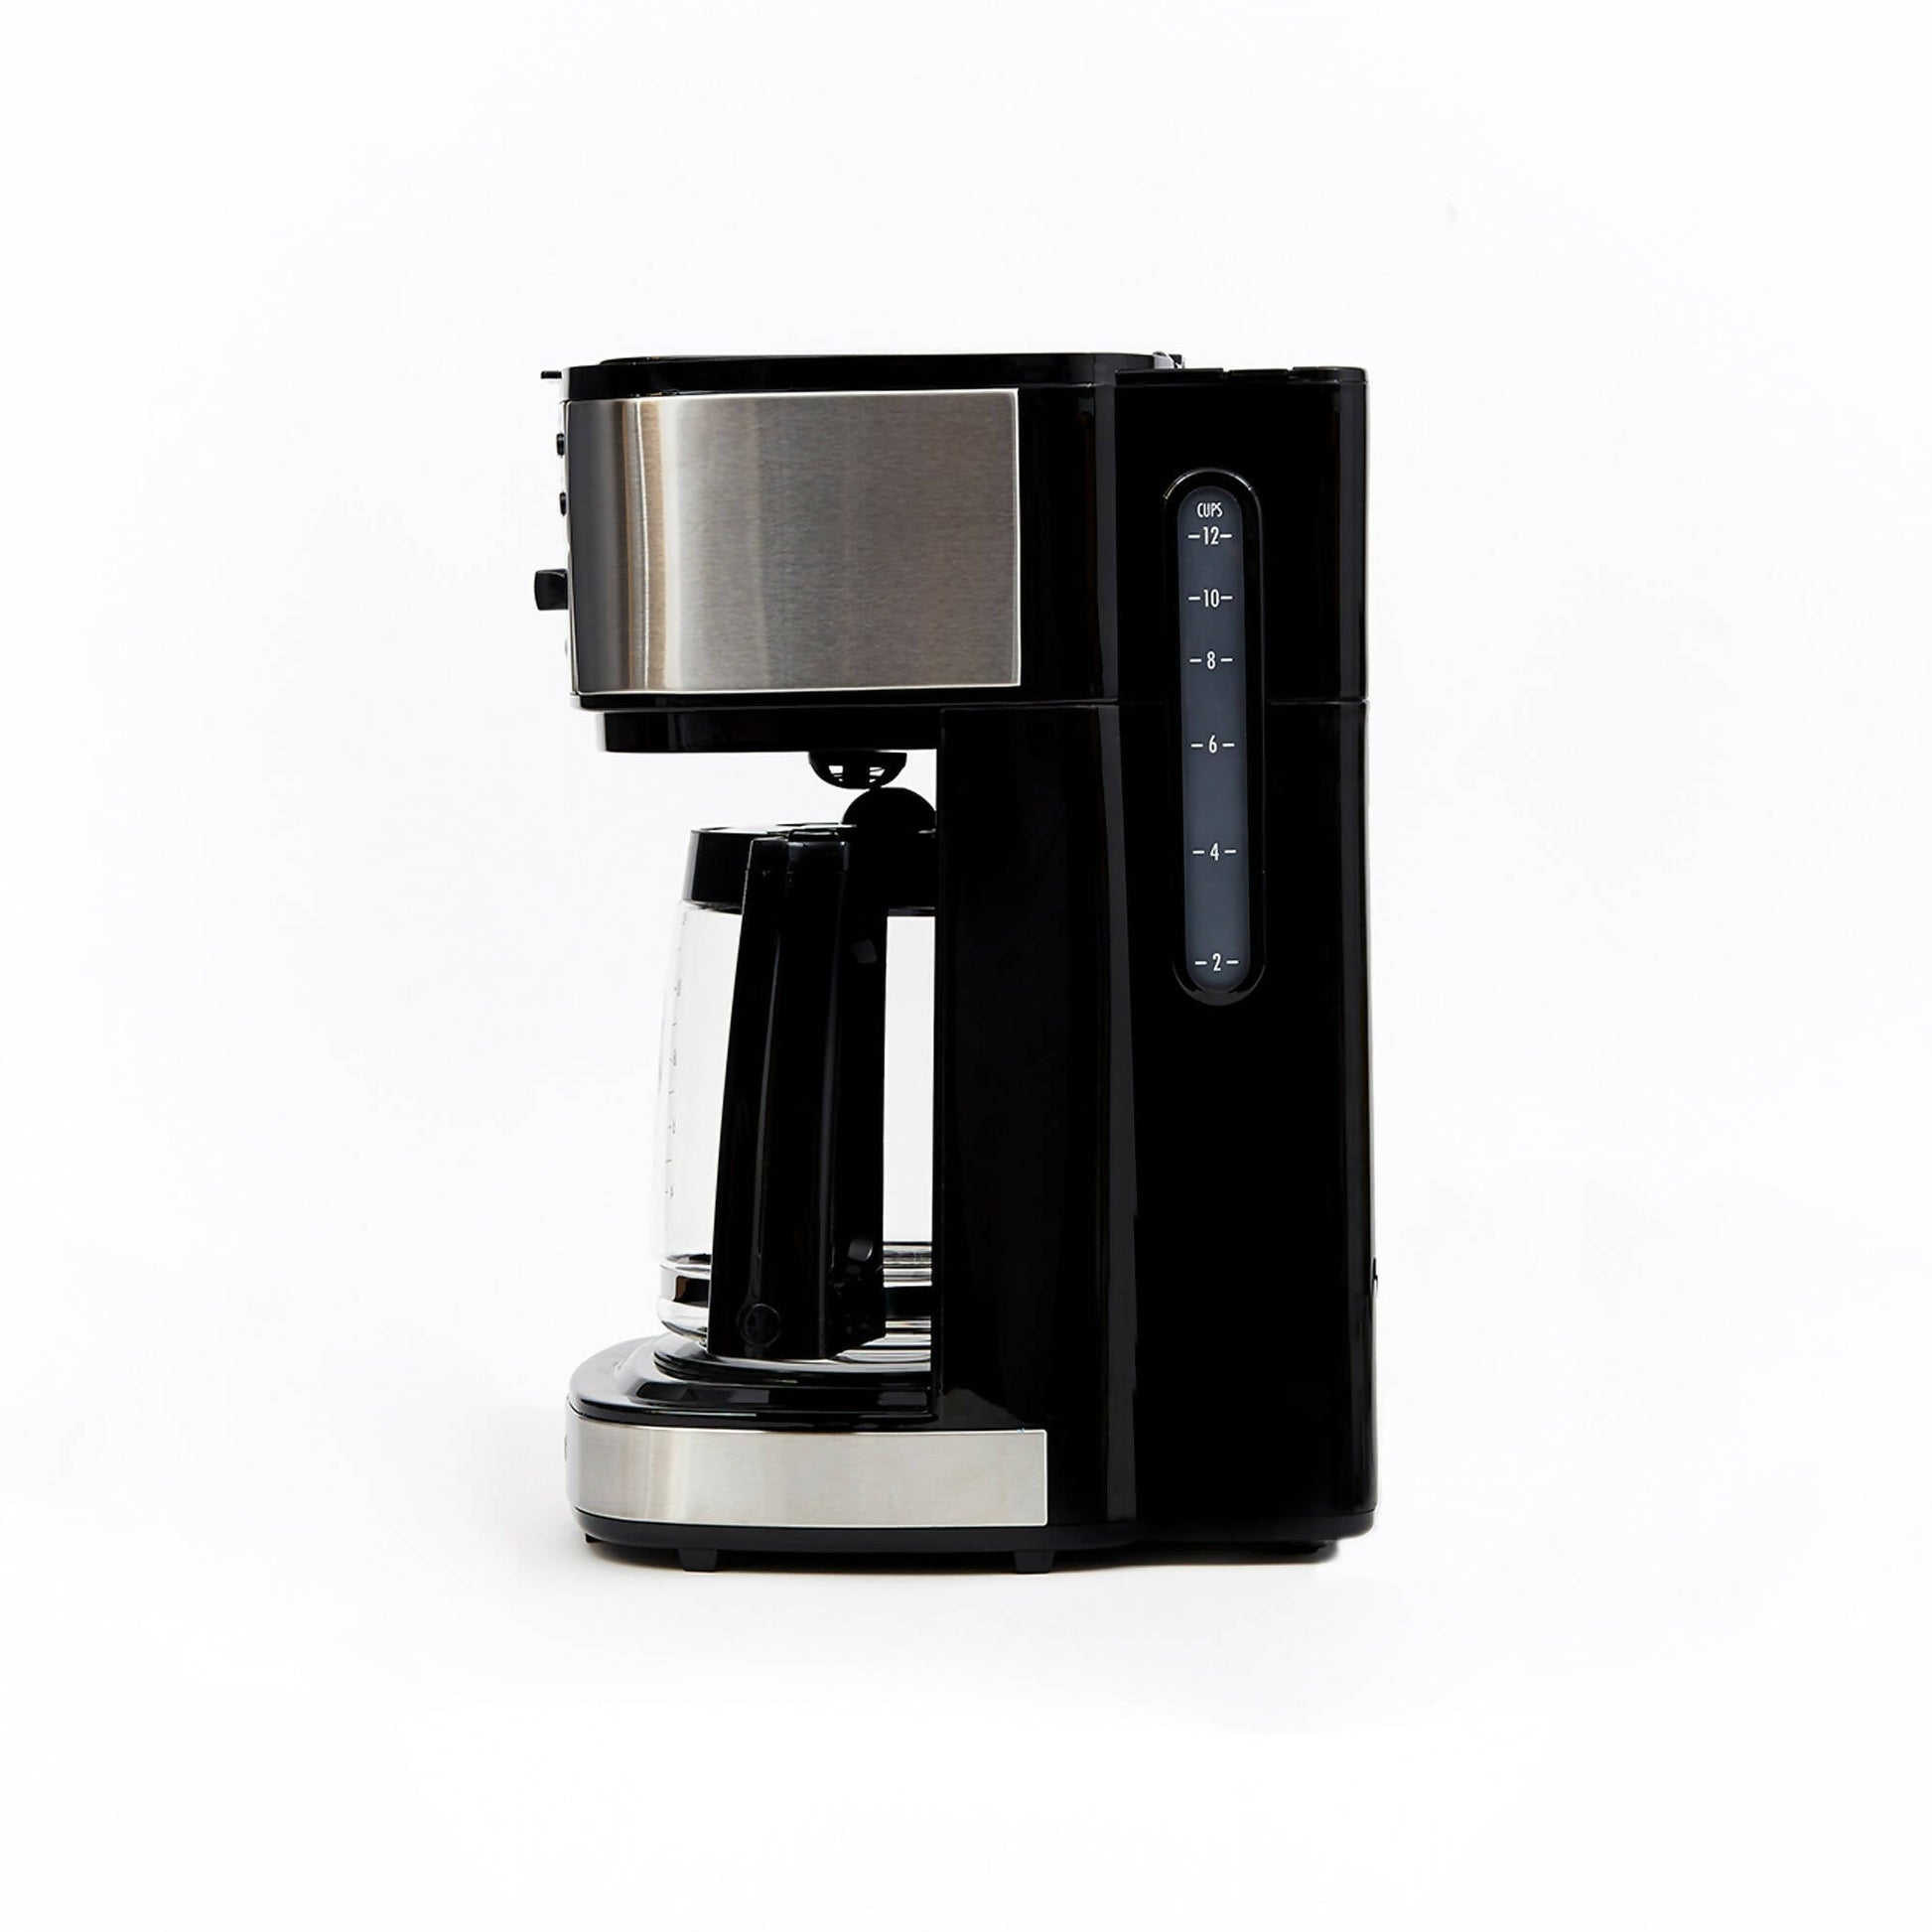 Cafetera Programable 49980-CL Doble Función Espresso + Americana Hamilton Beach10#Negro